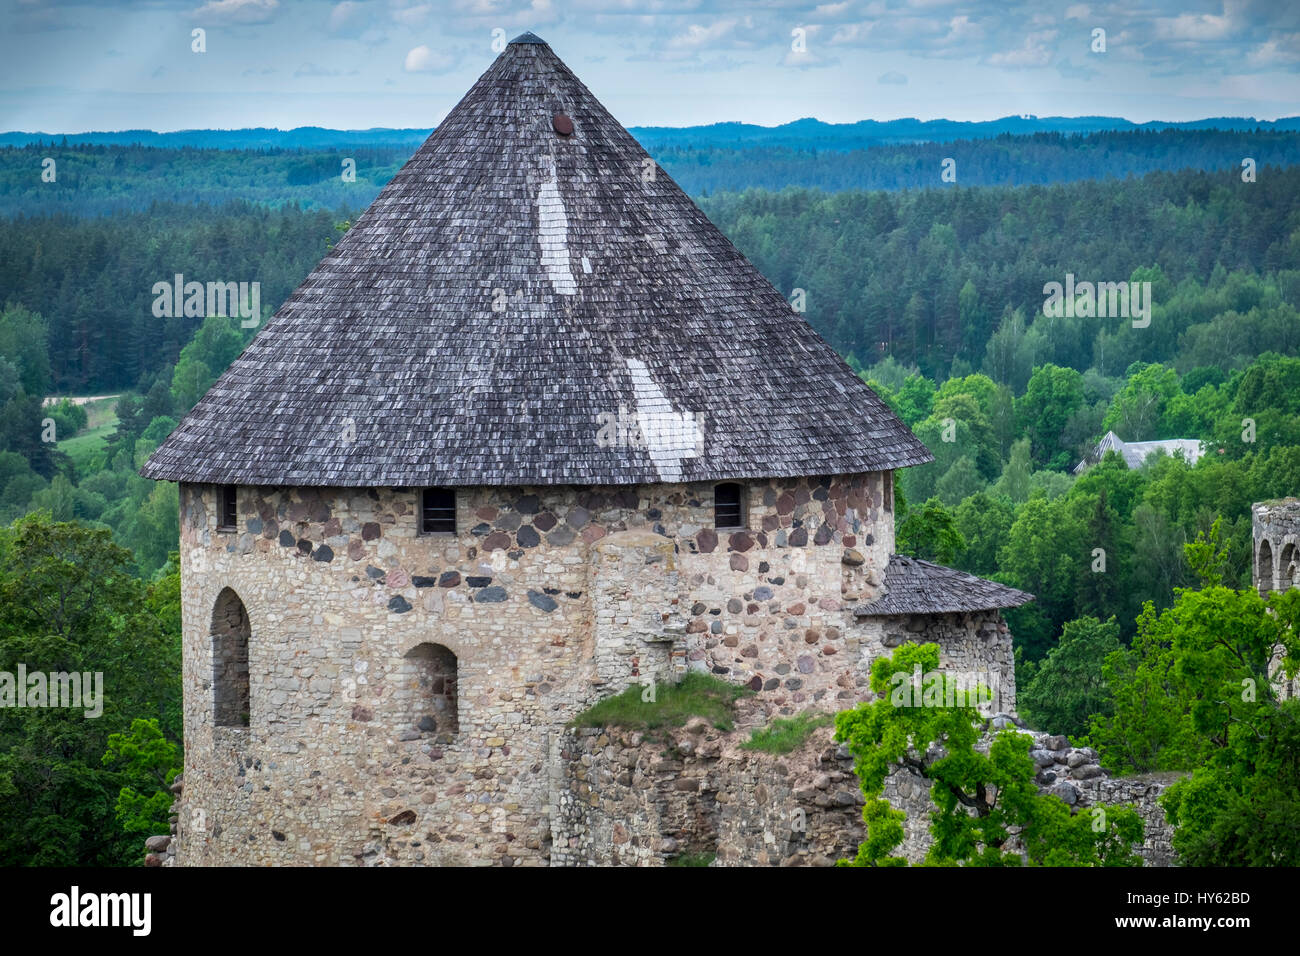 La Lettonie, Riga - CIRCA Juin 2014 : Le château de Cesis, (Wenden) en Lettonie Banque D'Images